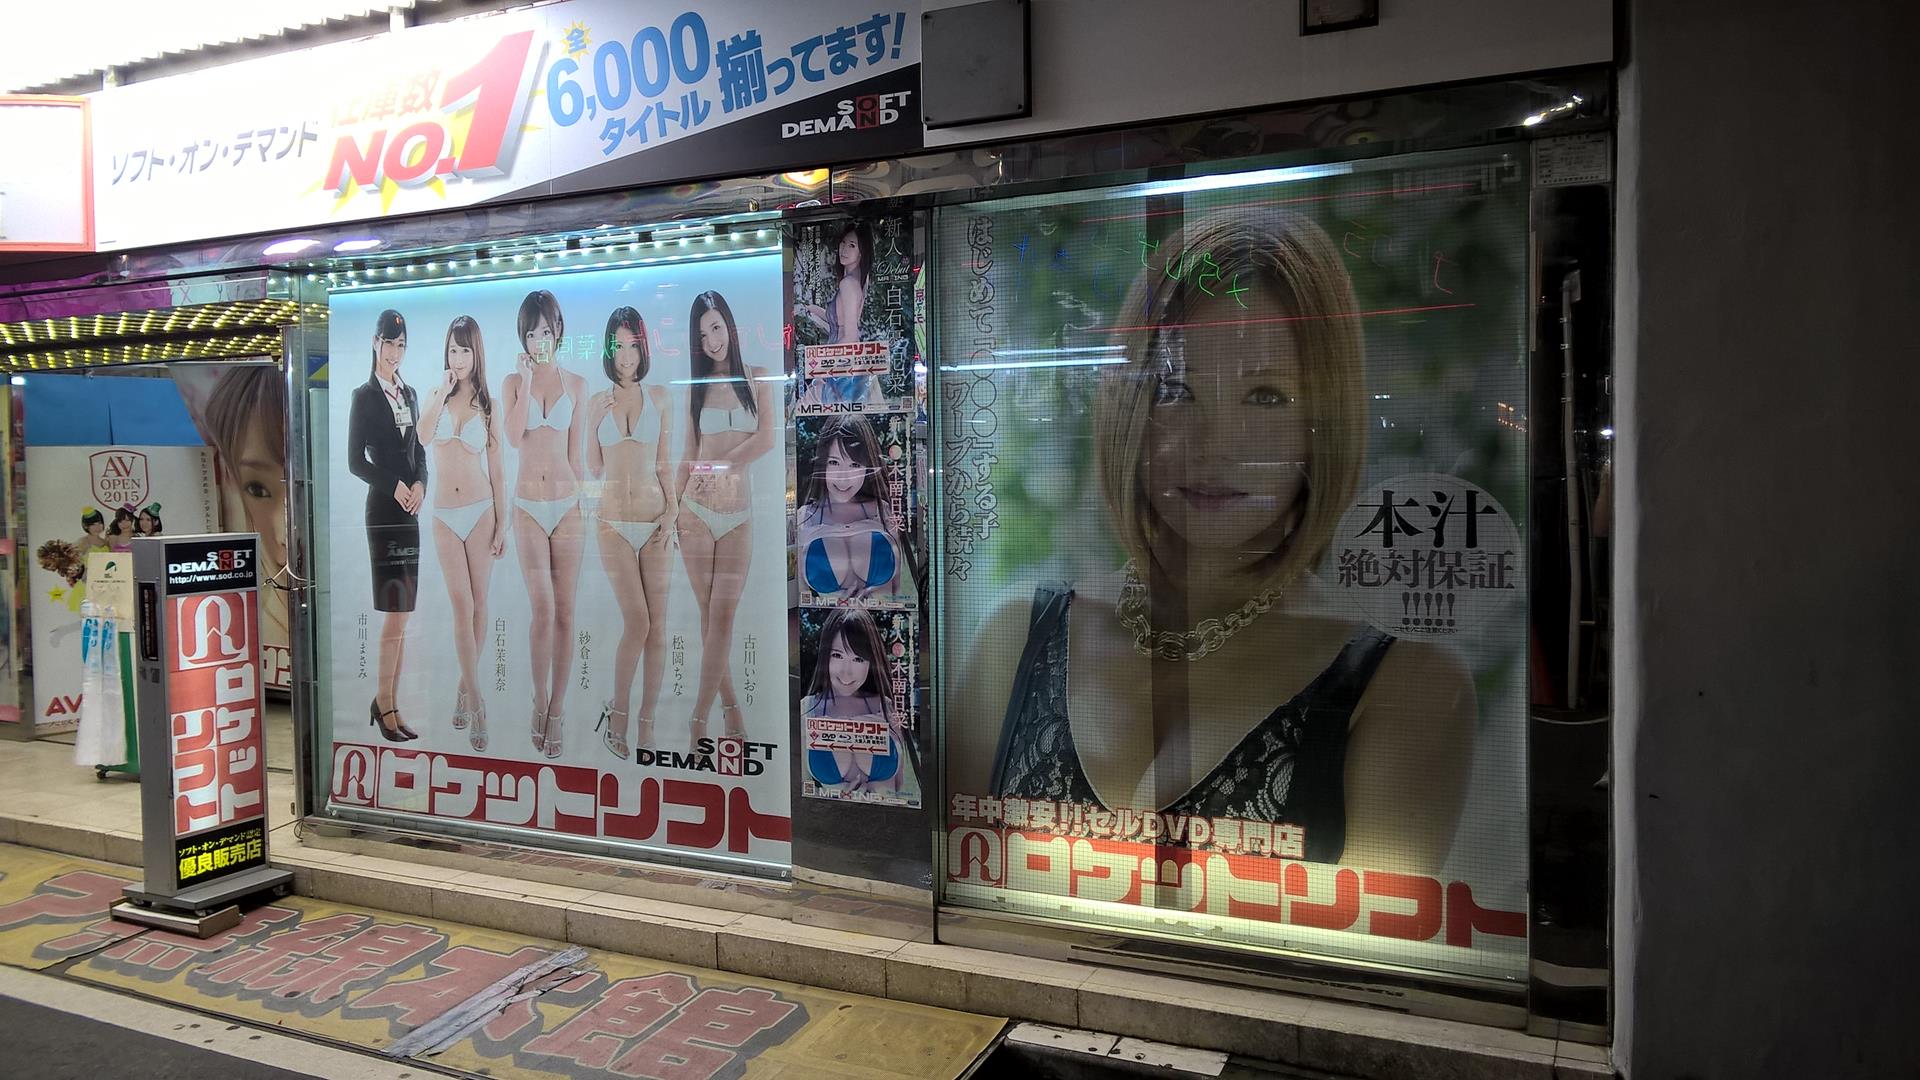 Die Japaner haben ein interessantes Verhältnis zu ihrer Sexualität